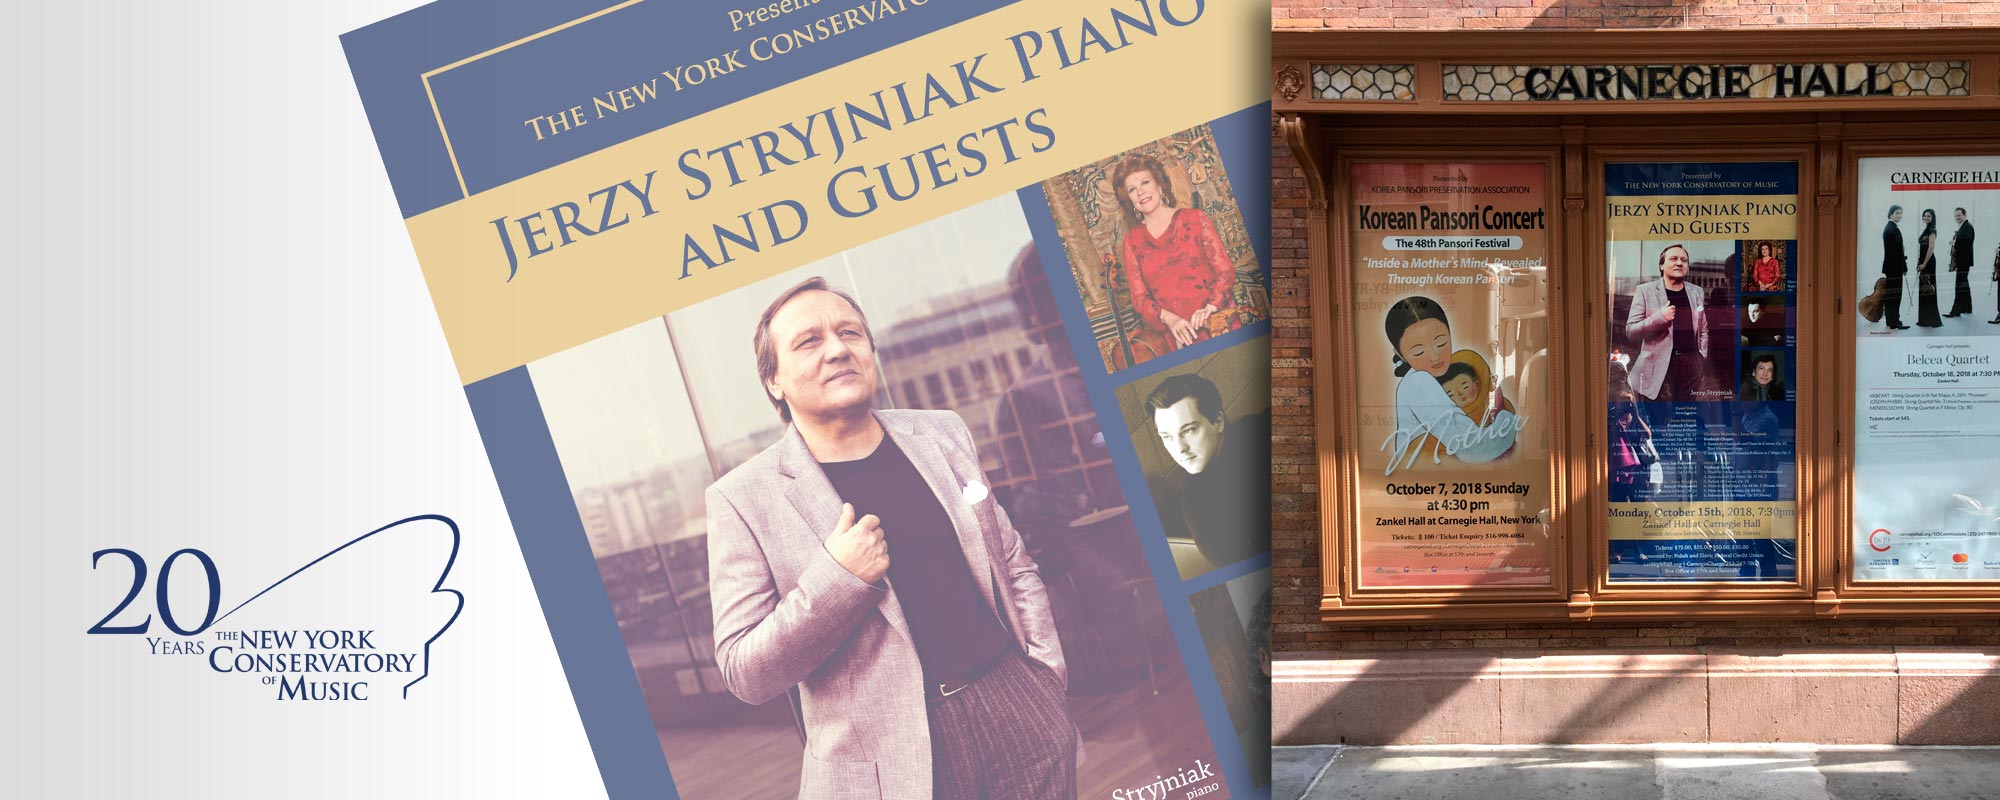  Plakat dla The New York Conservatory of Music występu pianisty Jurka Stryjniaka w Carnegie Hall 